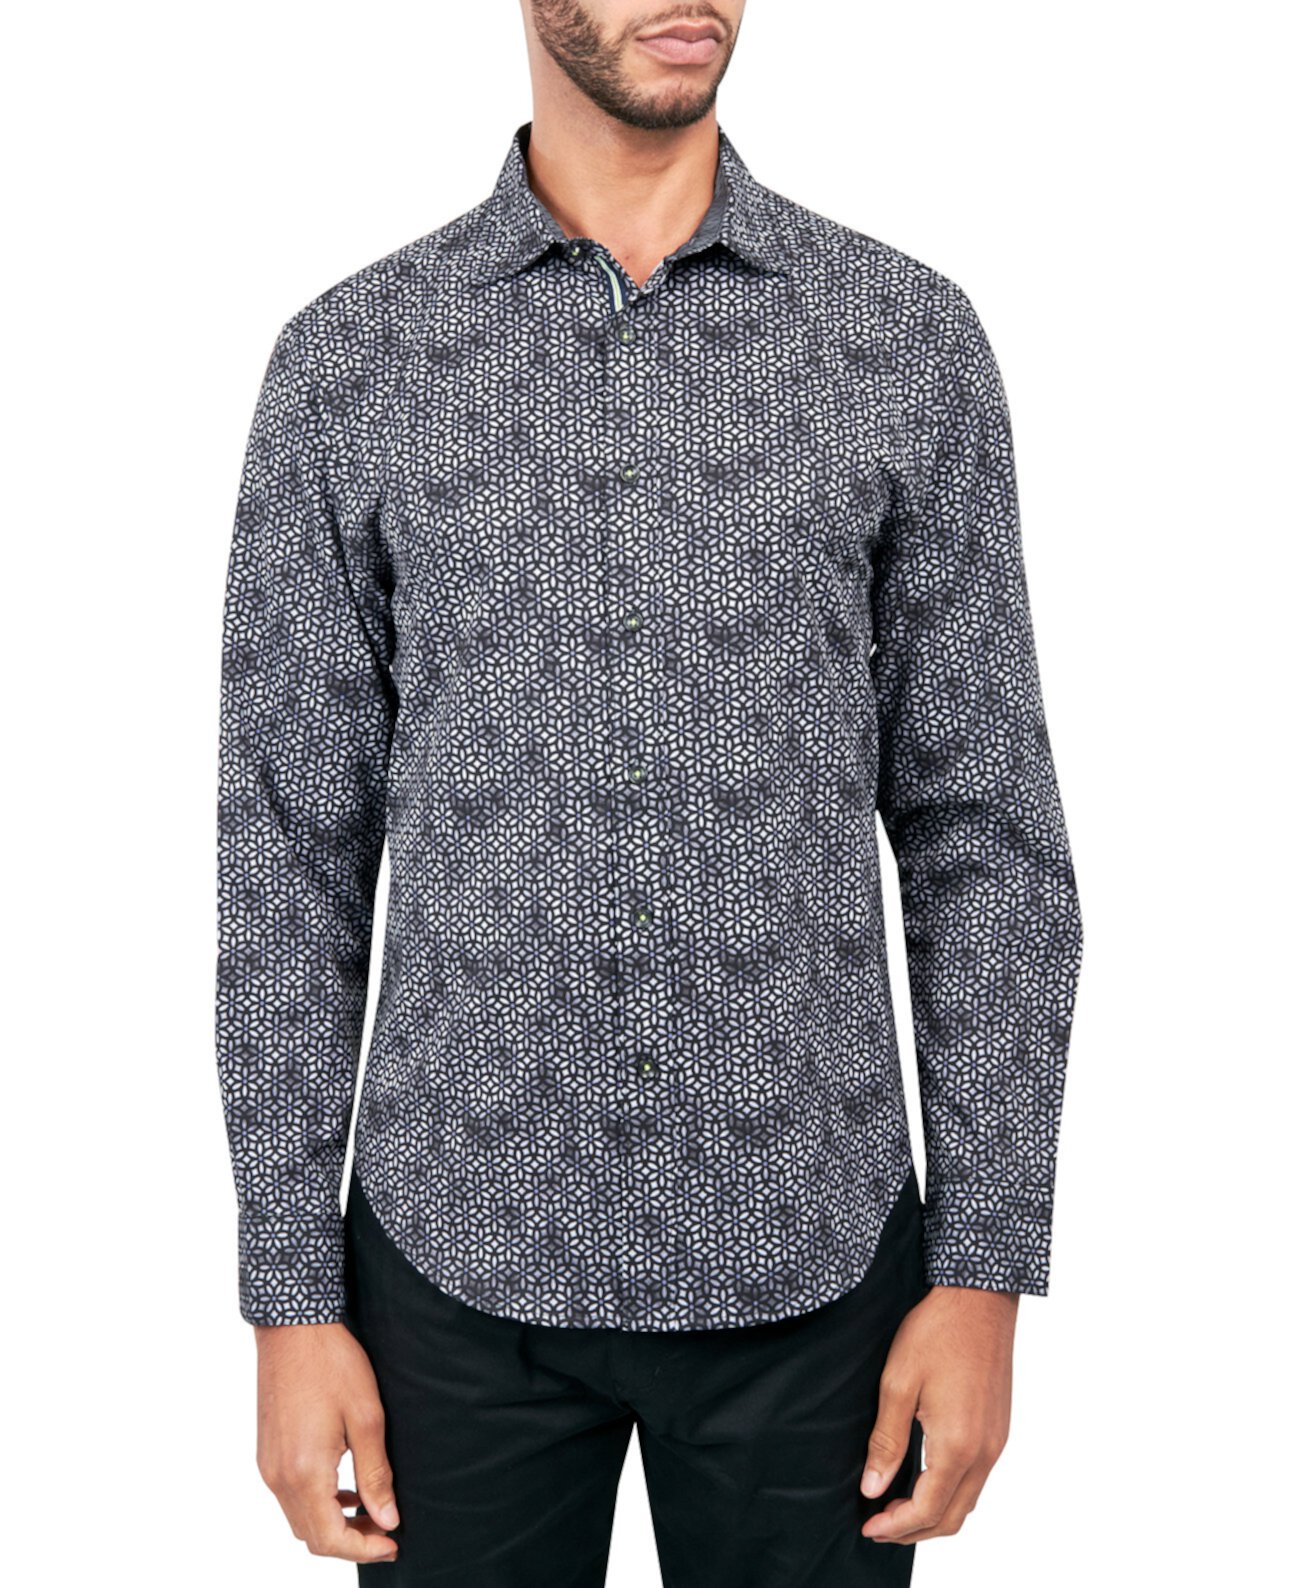 Мужская рубашка обычного кроя на пуговицах без глажки с геопринтом и эластичным принтом Society of Threads